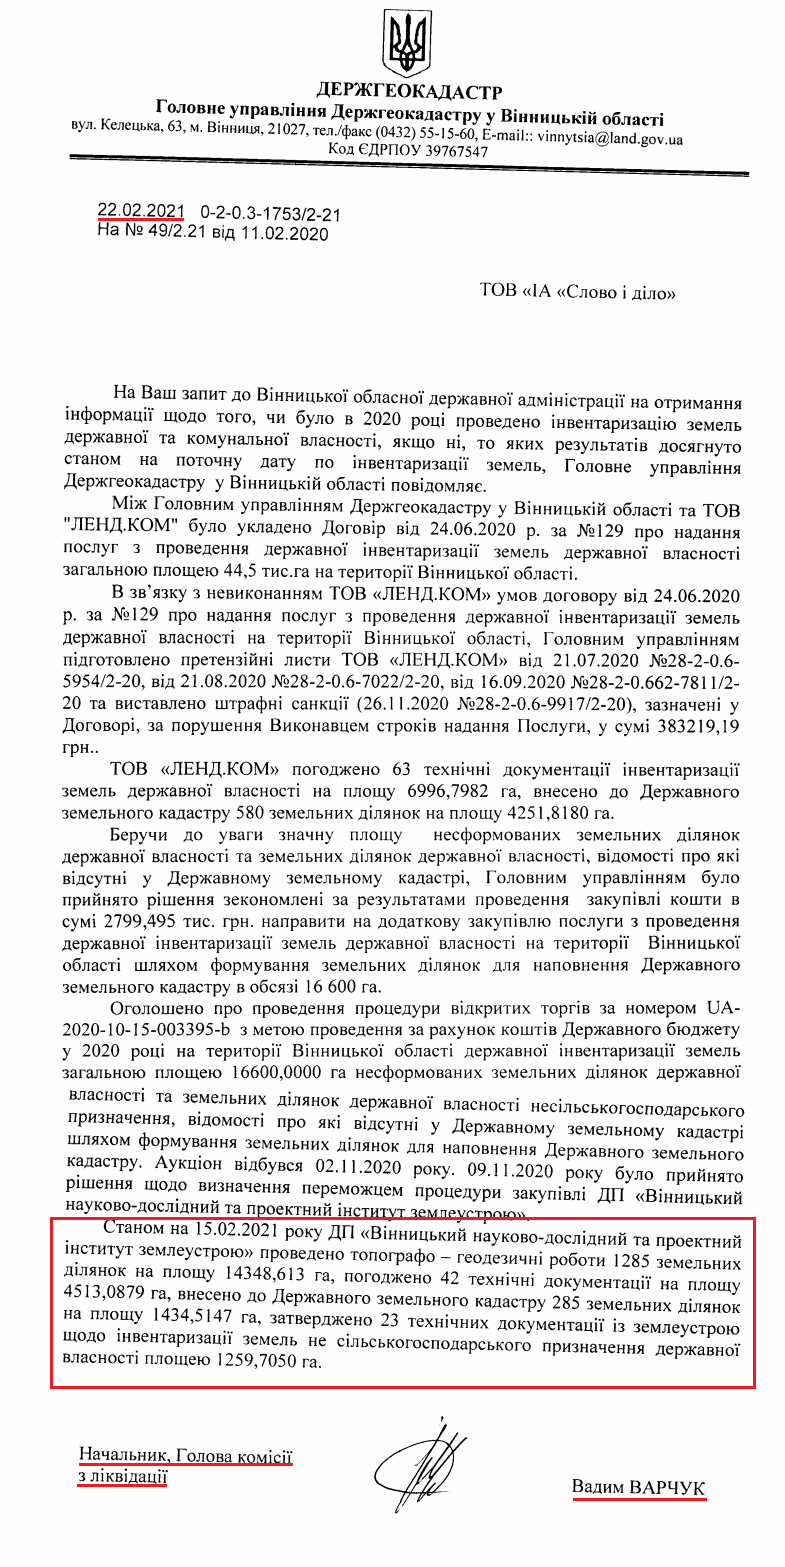 Лист начальника голови комісії Вадима Варчука